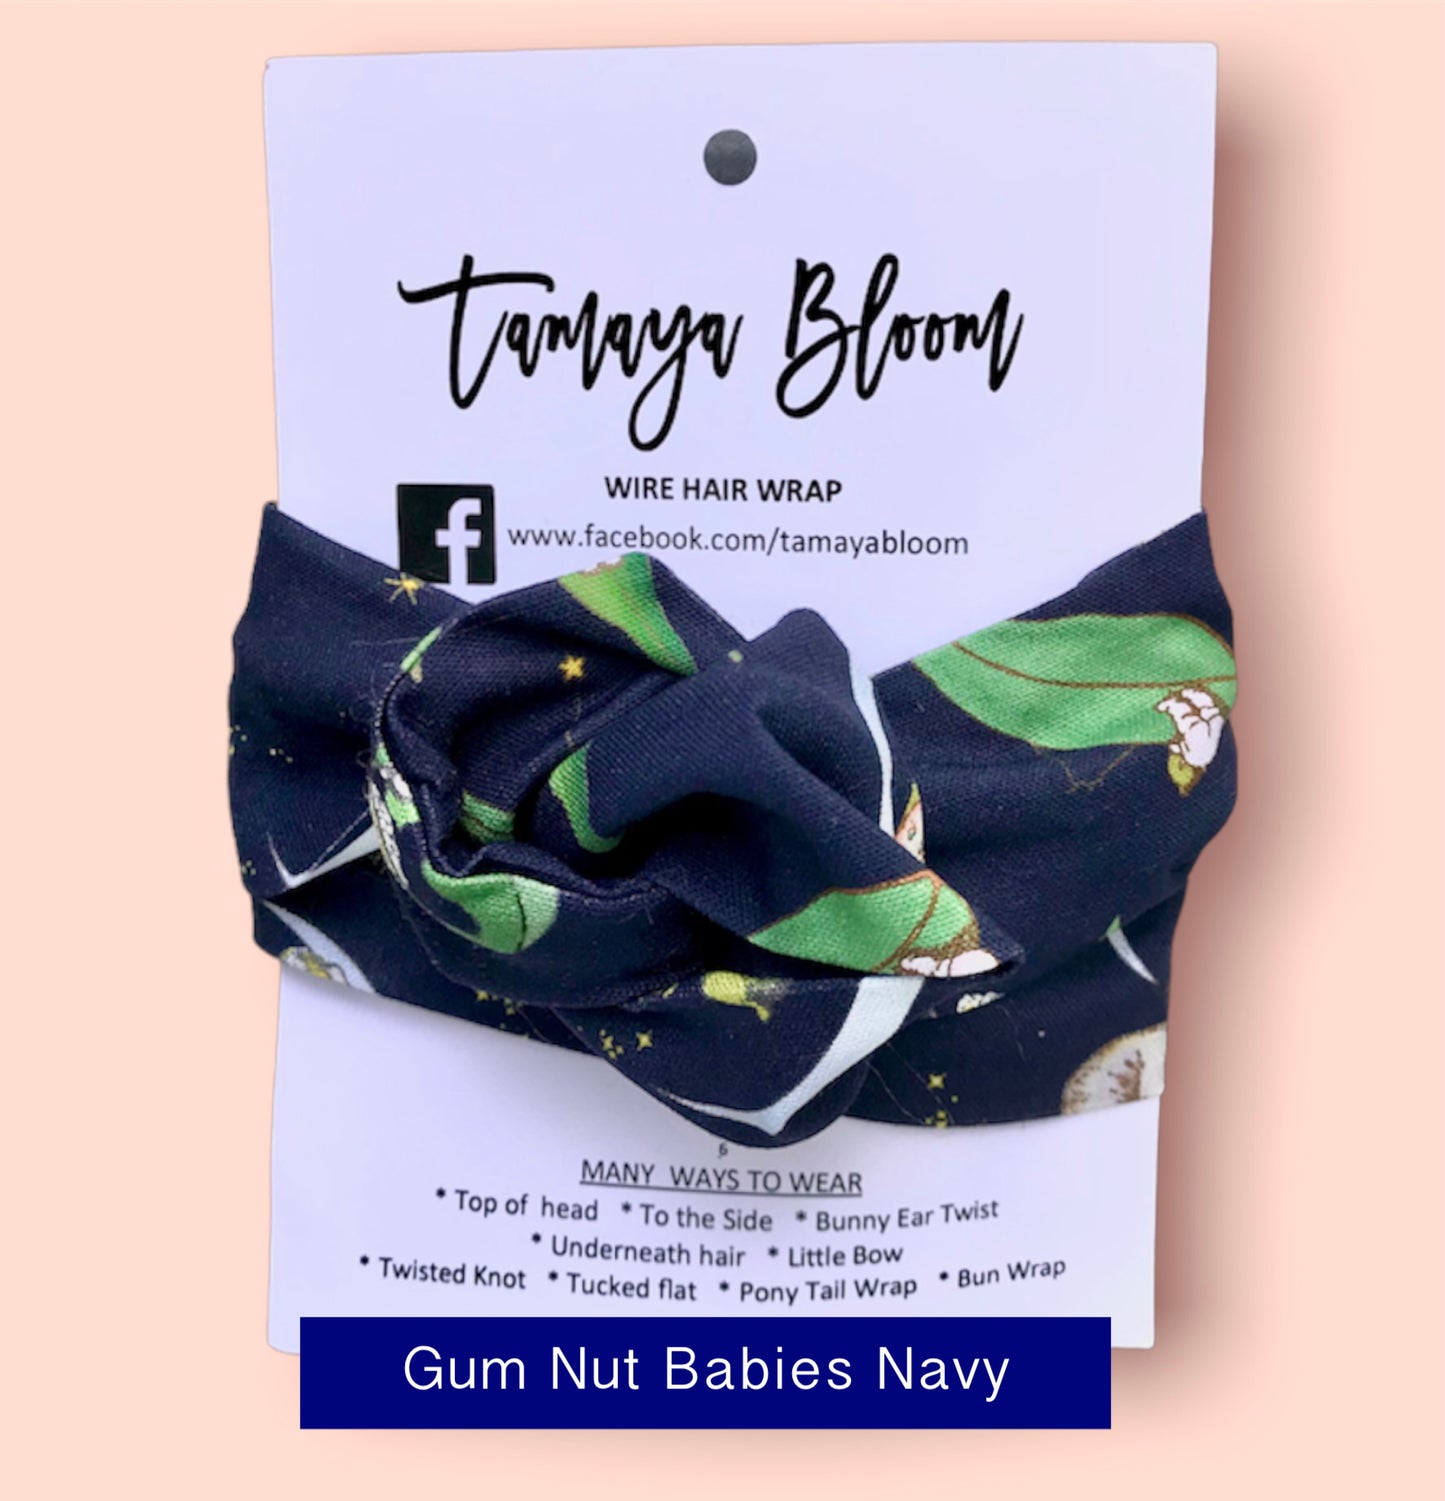 Wire Hair Wrap Gum Nut Babies Navy